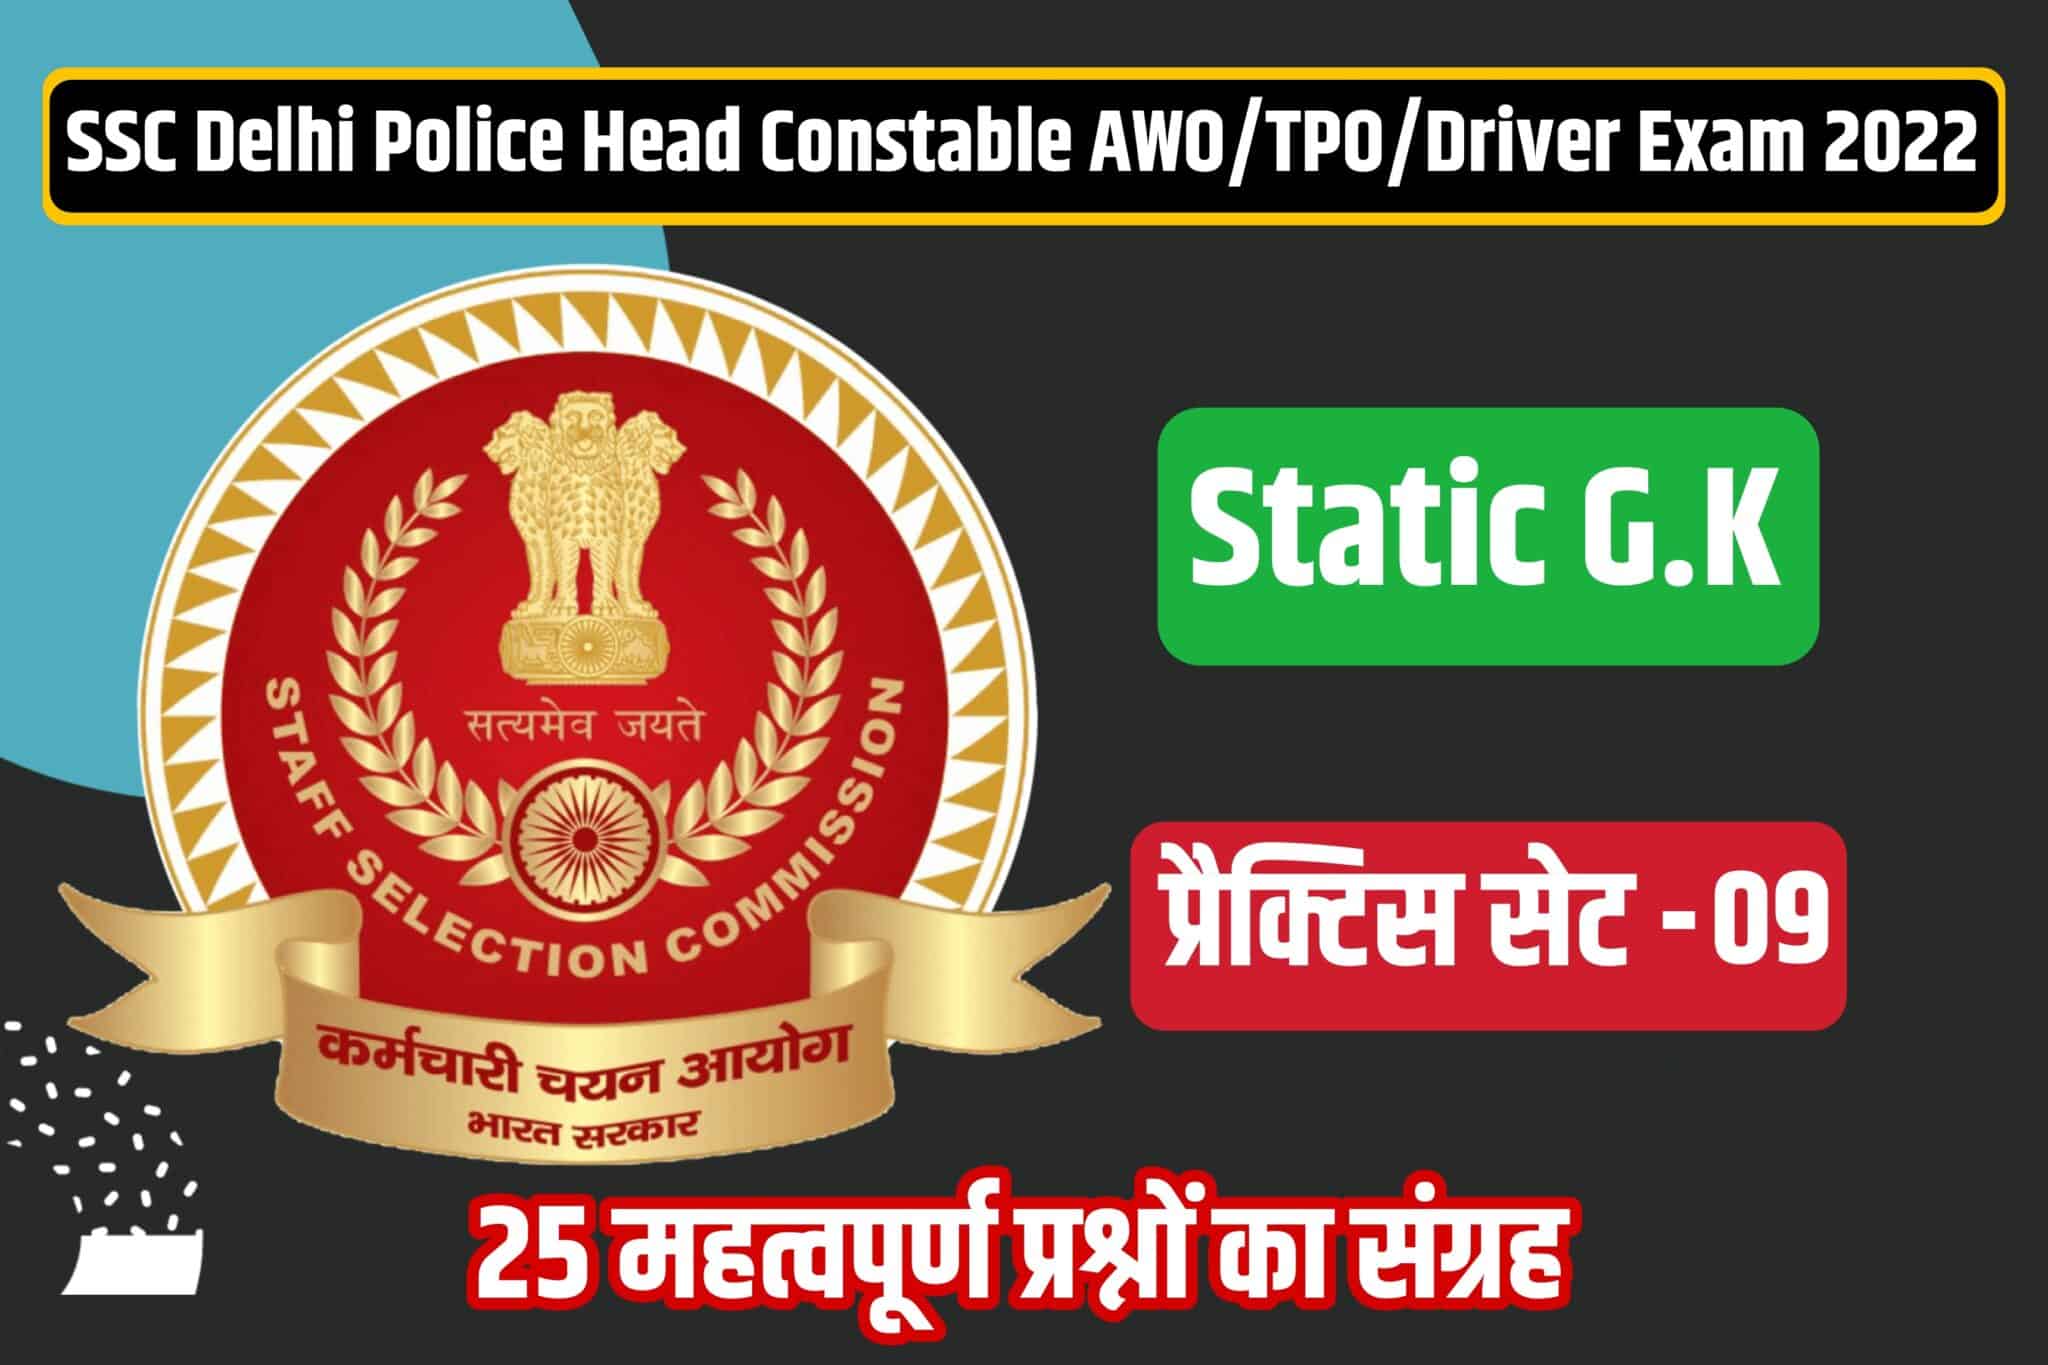 SSC Delhi Police Head Constable/AWO/TPO/Driver Static GK Practice Set 09 | परीक्षा में जाने से पूर्व अवश्य पढ़ें ये महत्वपूर्ण प्रश्न